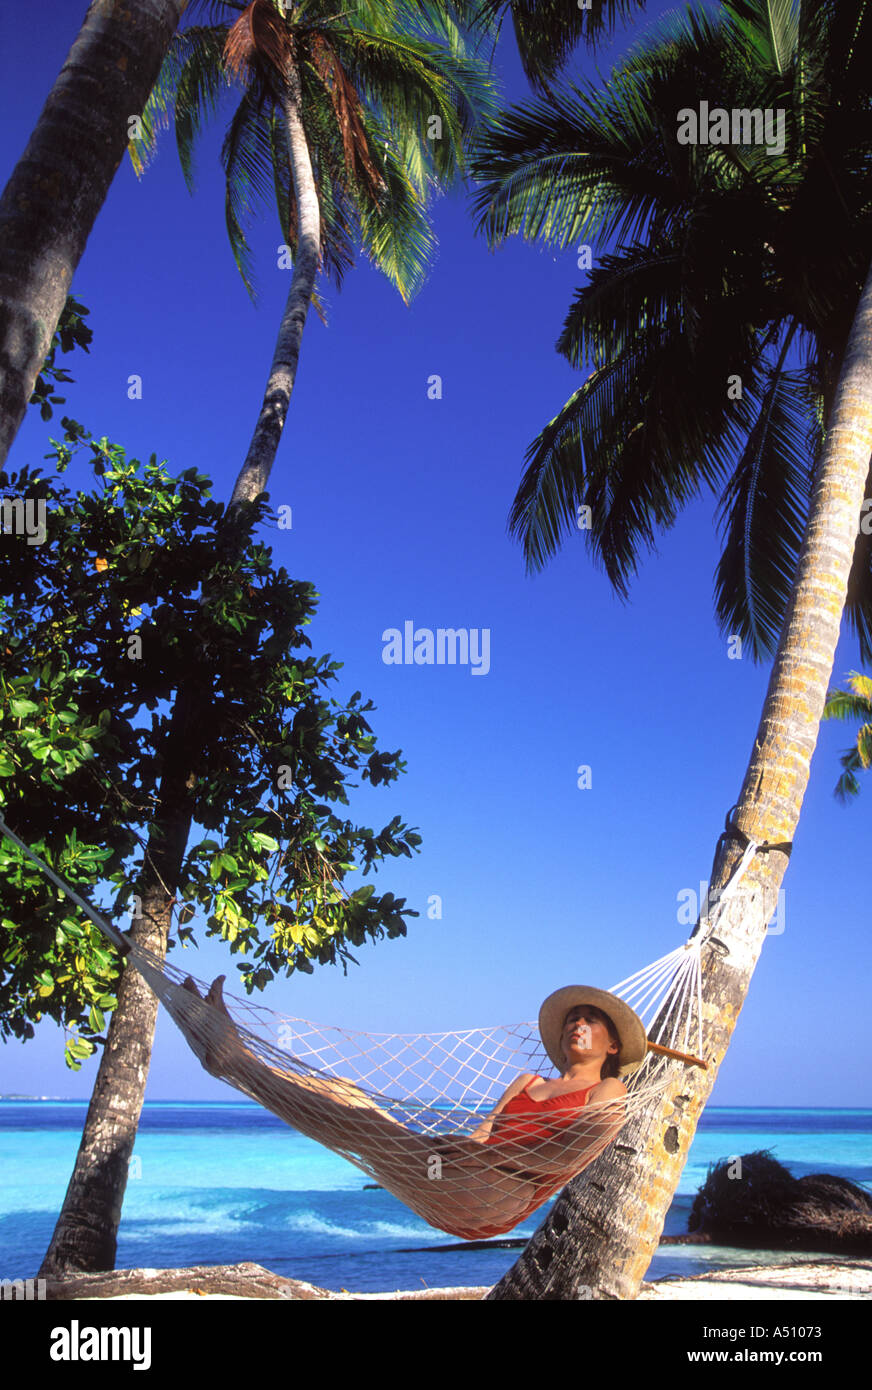 Frau zum Entspannen in der Hängematte unter Palmen Bäume Kuda Bandos Island Nord Male Atoll Malediven Indischer Ozean Stockfoto